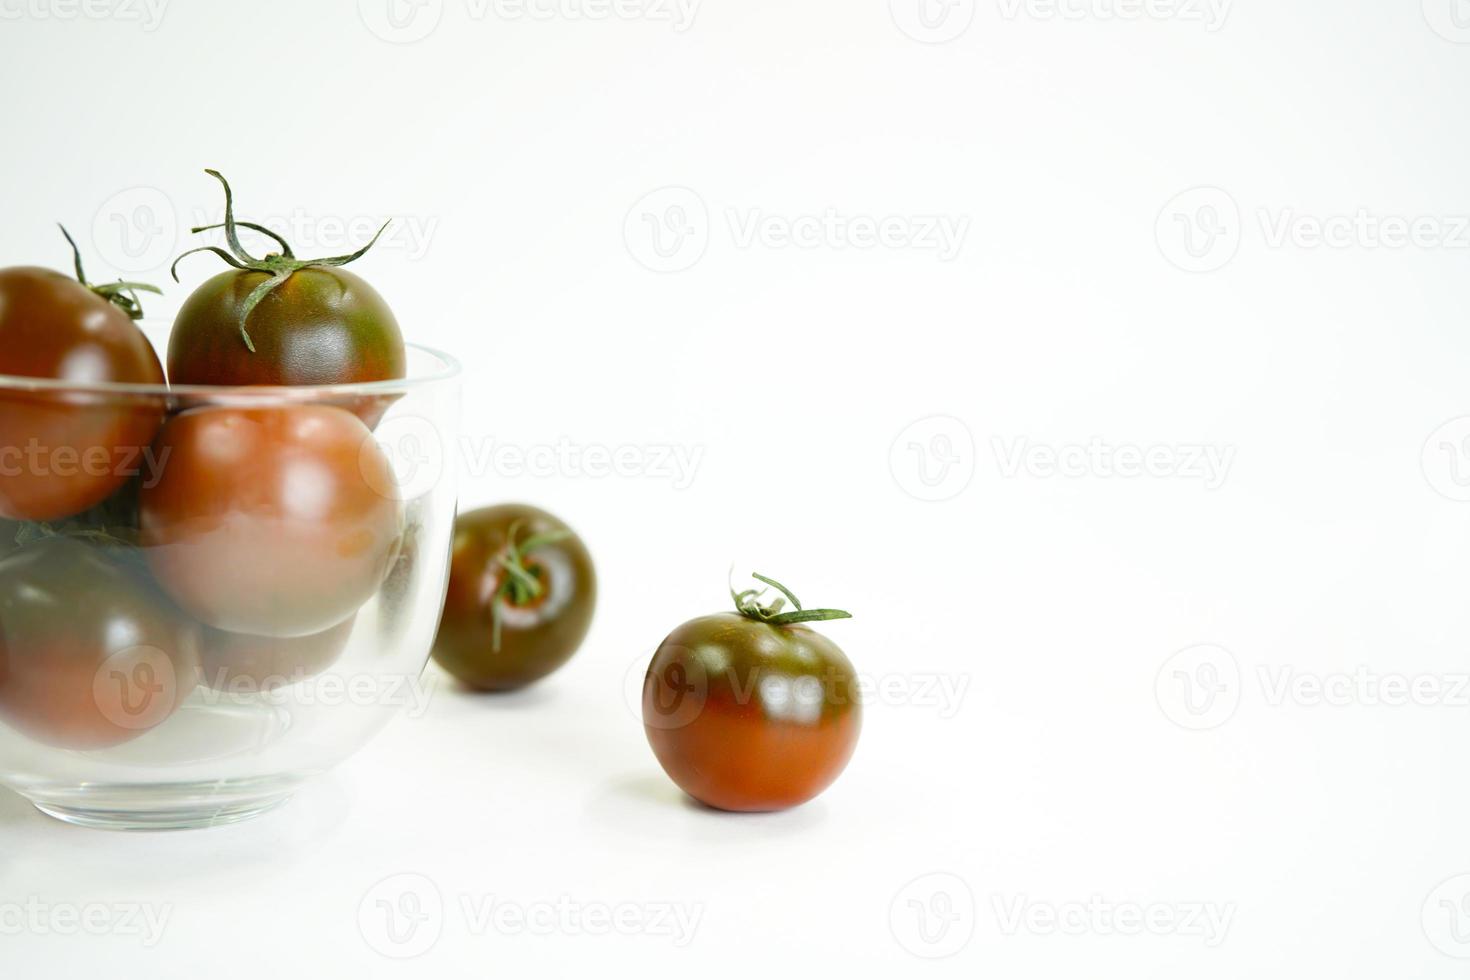 objet tomate frais et nutritif photo